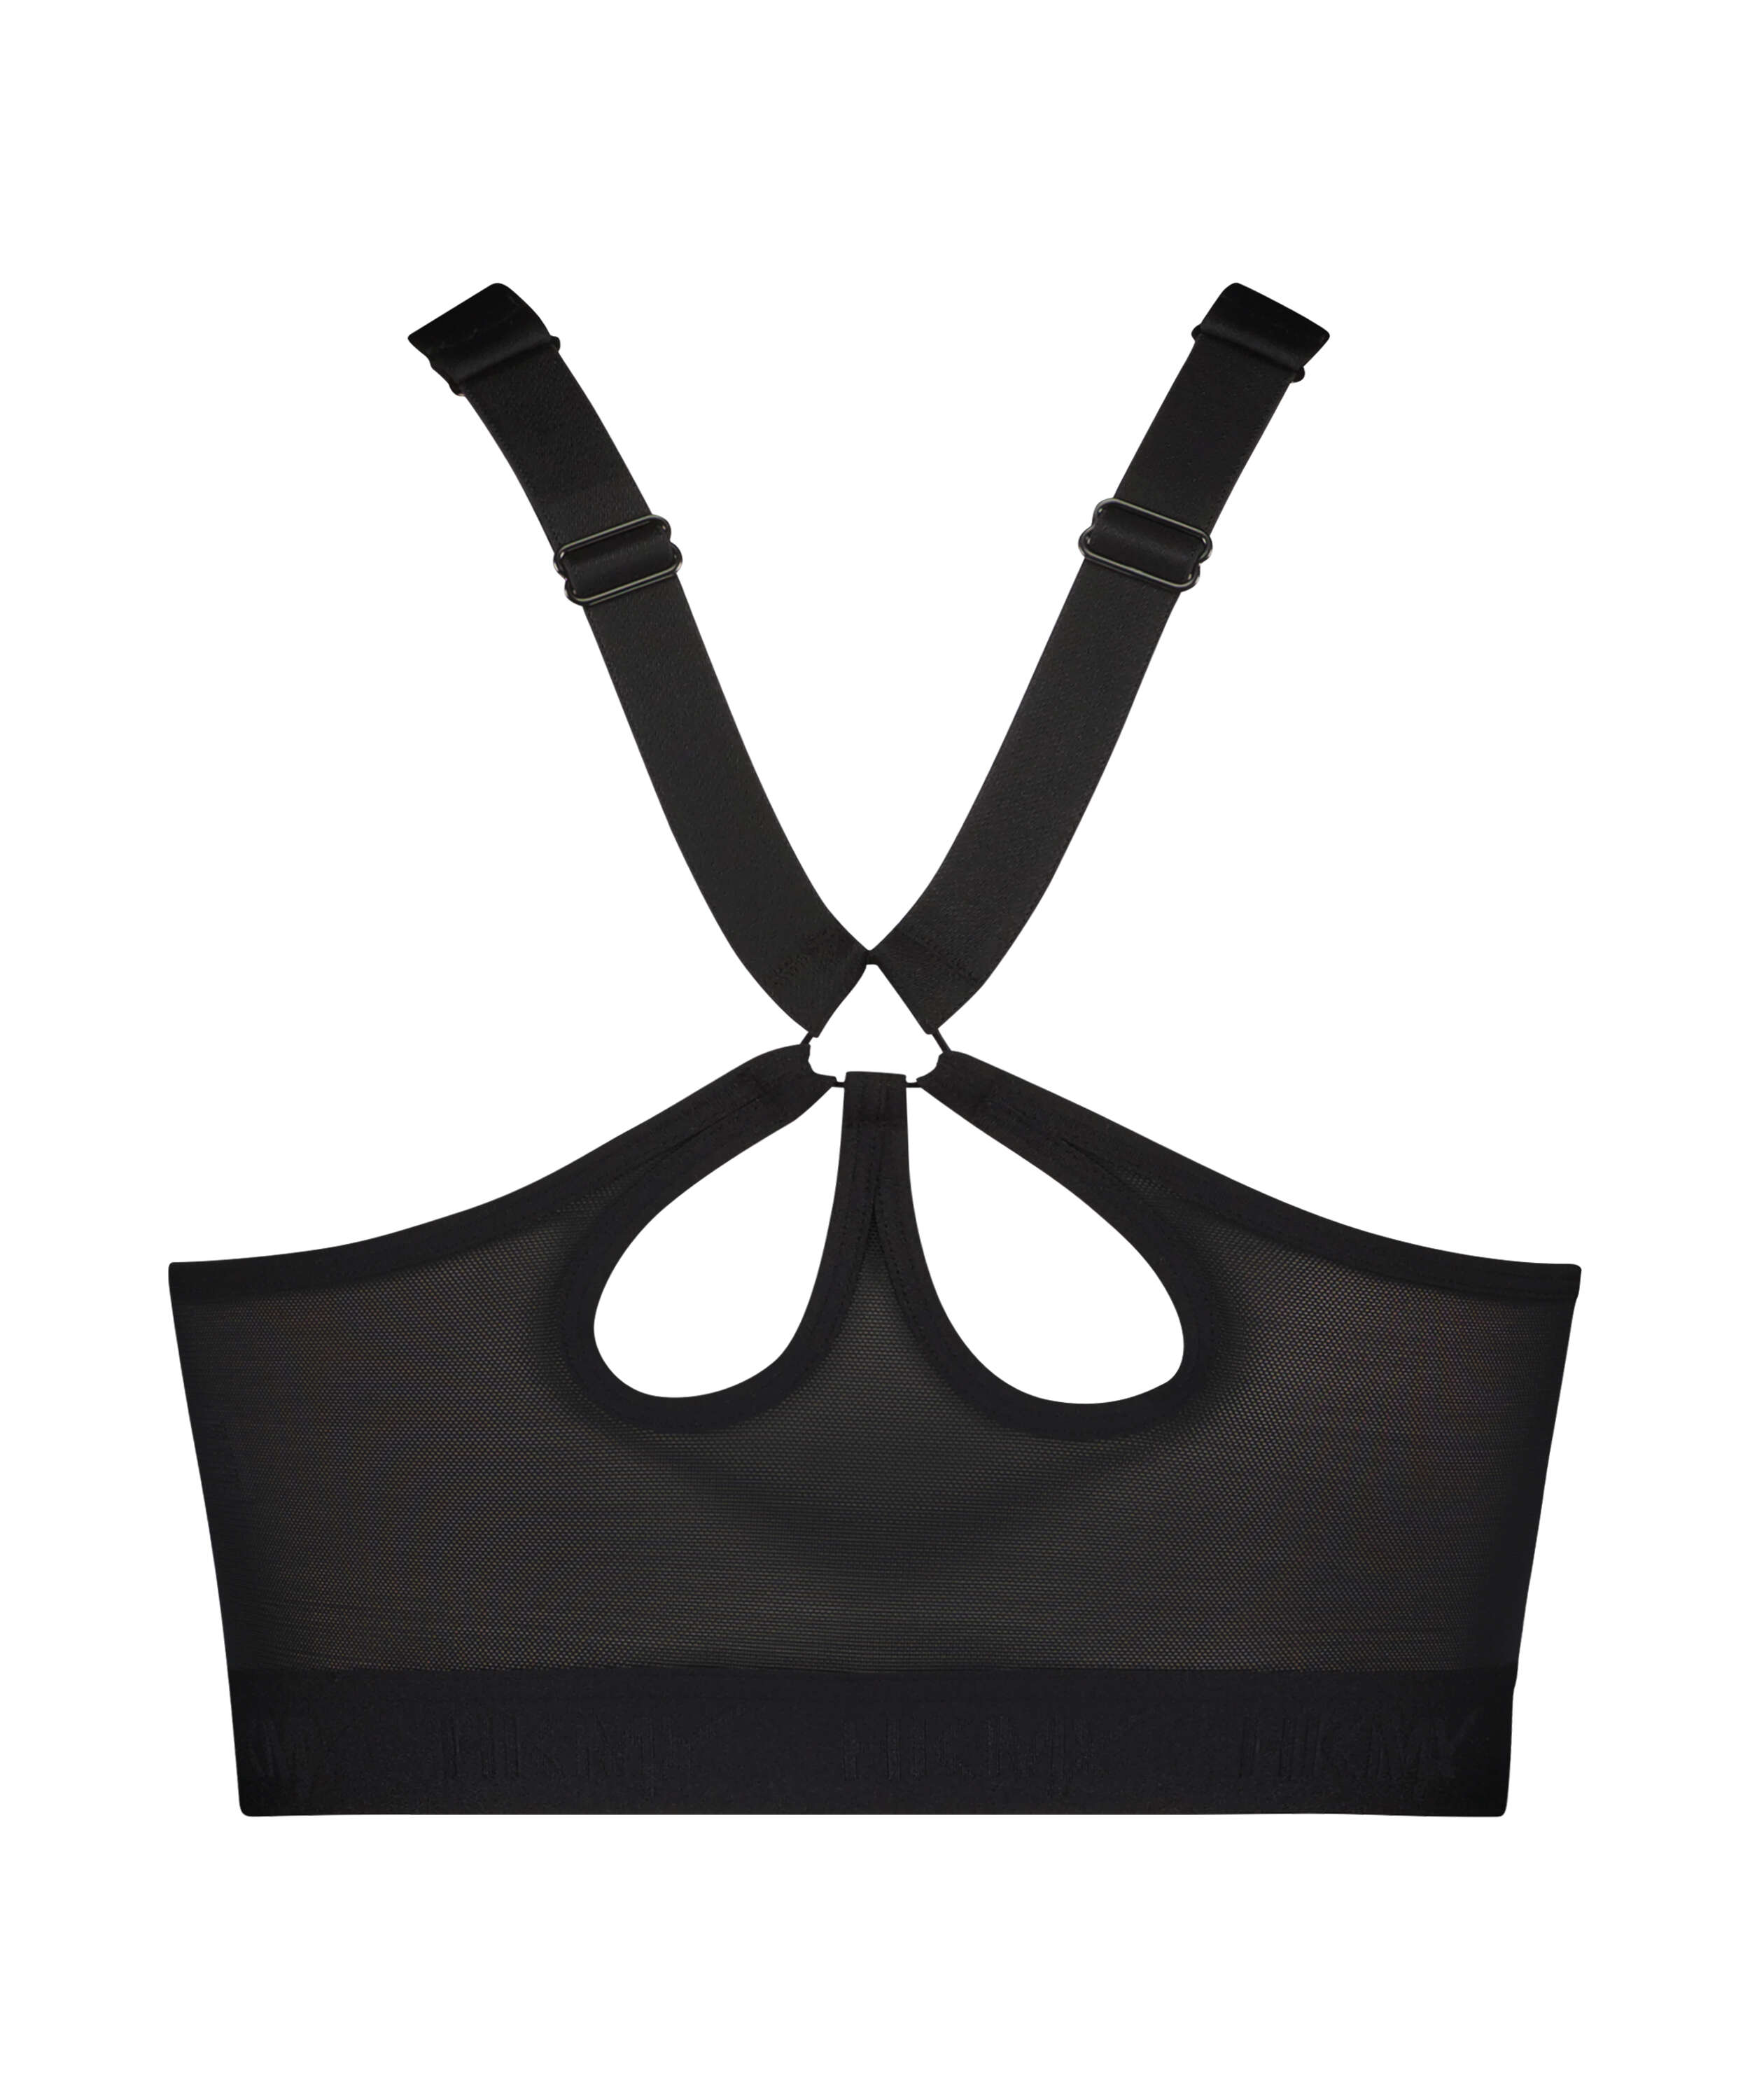 HKMX Sports bra The Pro Level 3, White, main